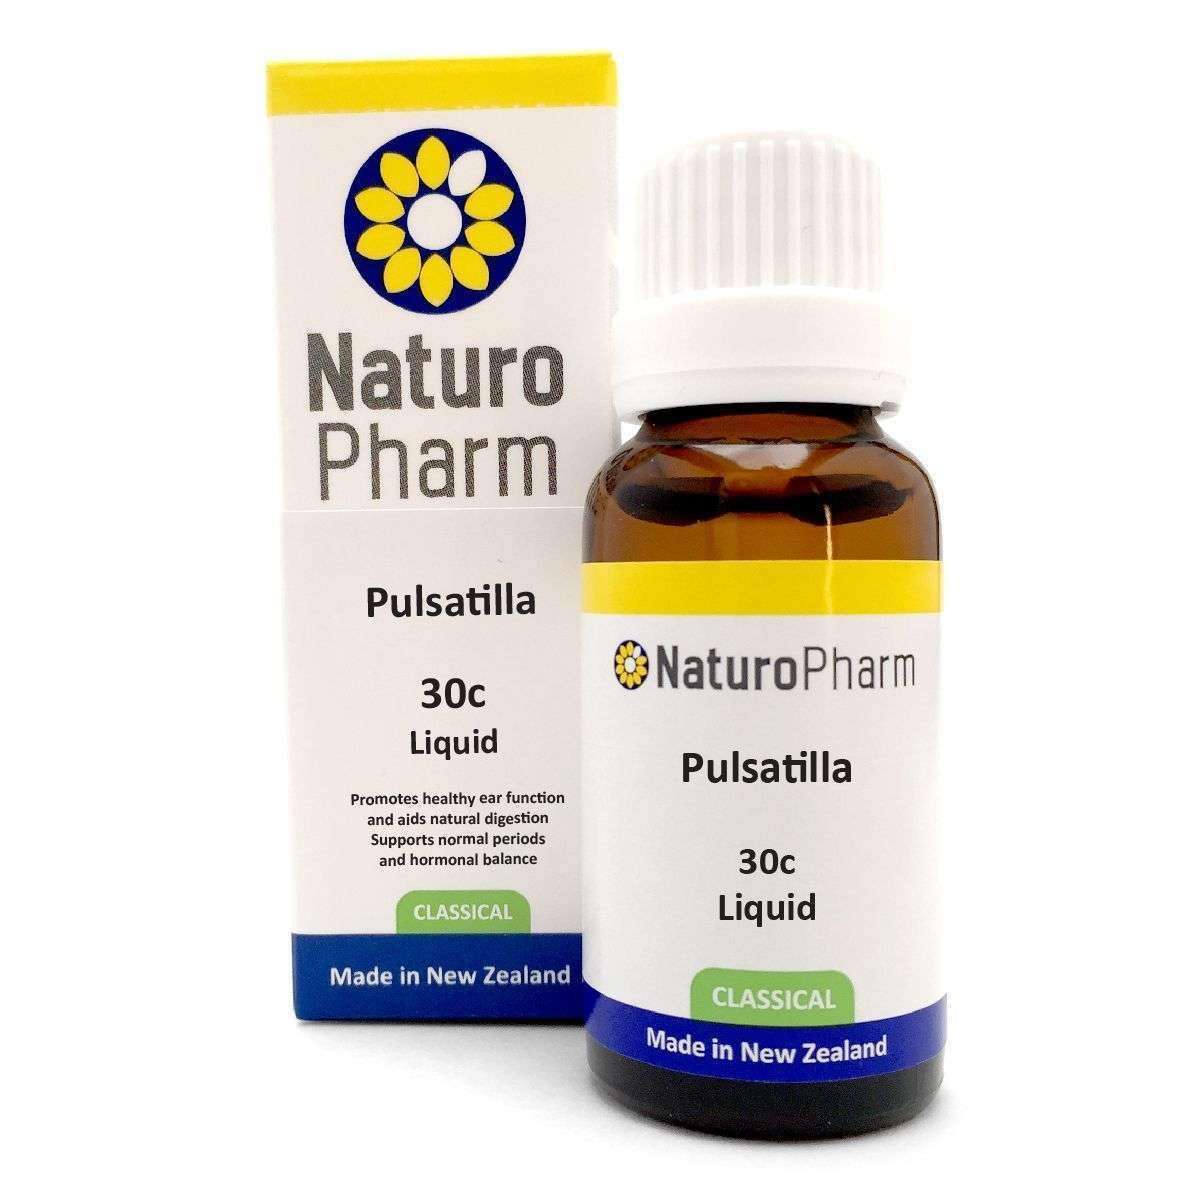 Naturo Pharm Pulsatilla 30c